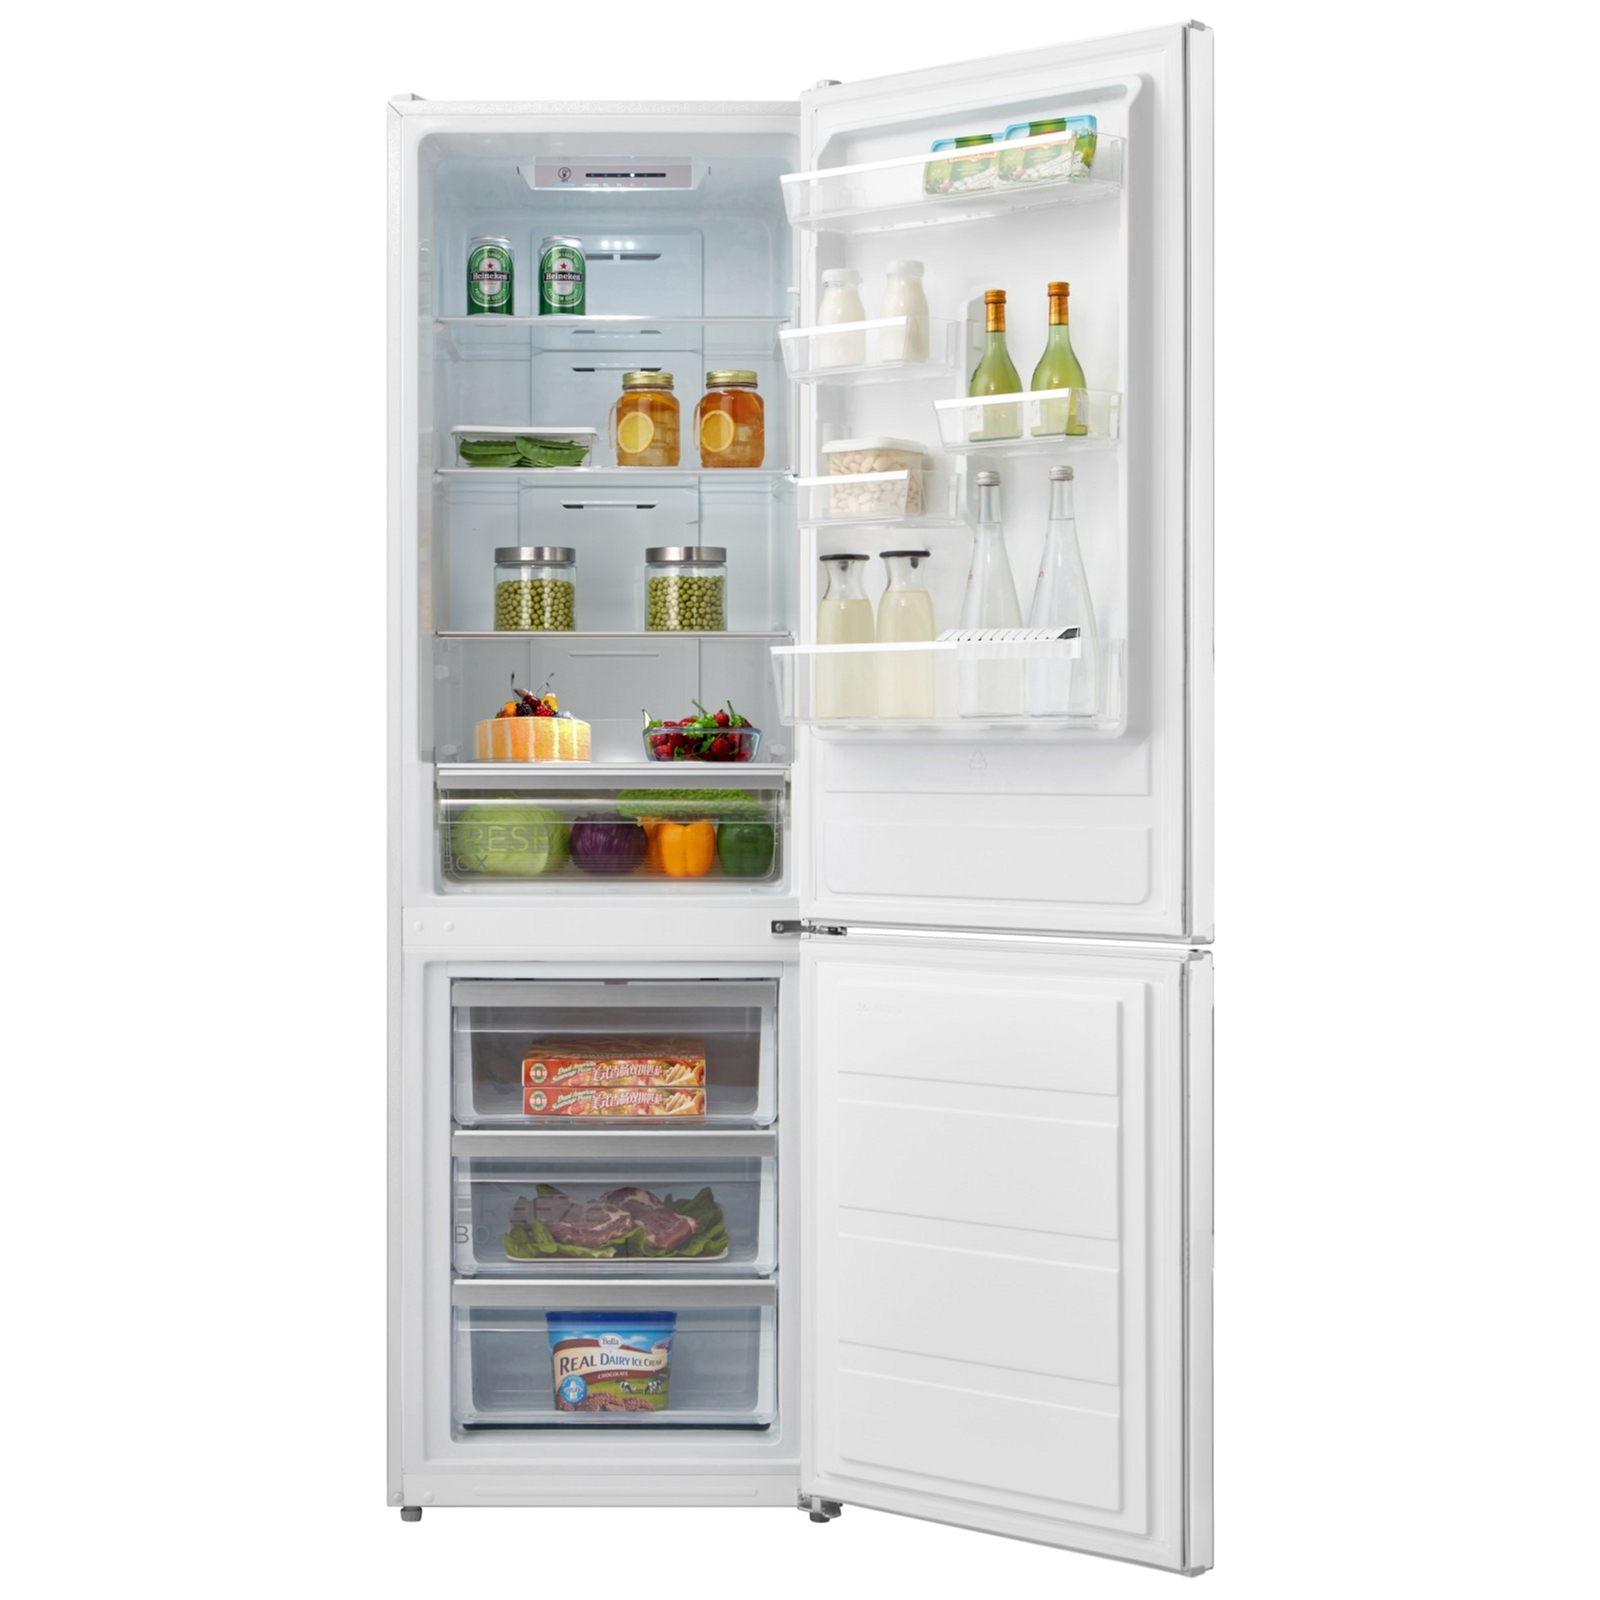 Холодильник Midea MDRB424FGF01I изображение 3